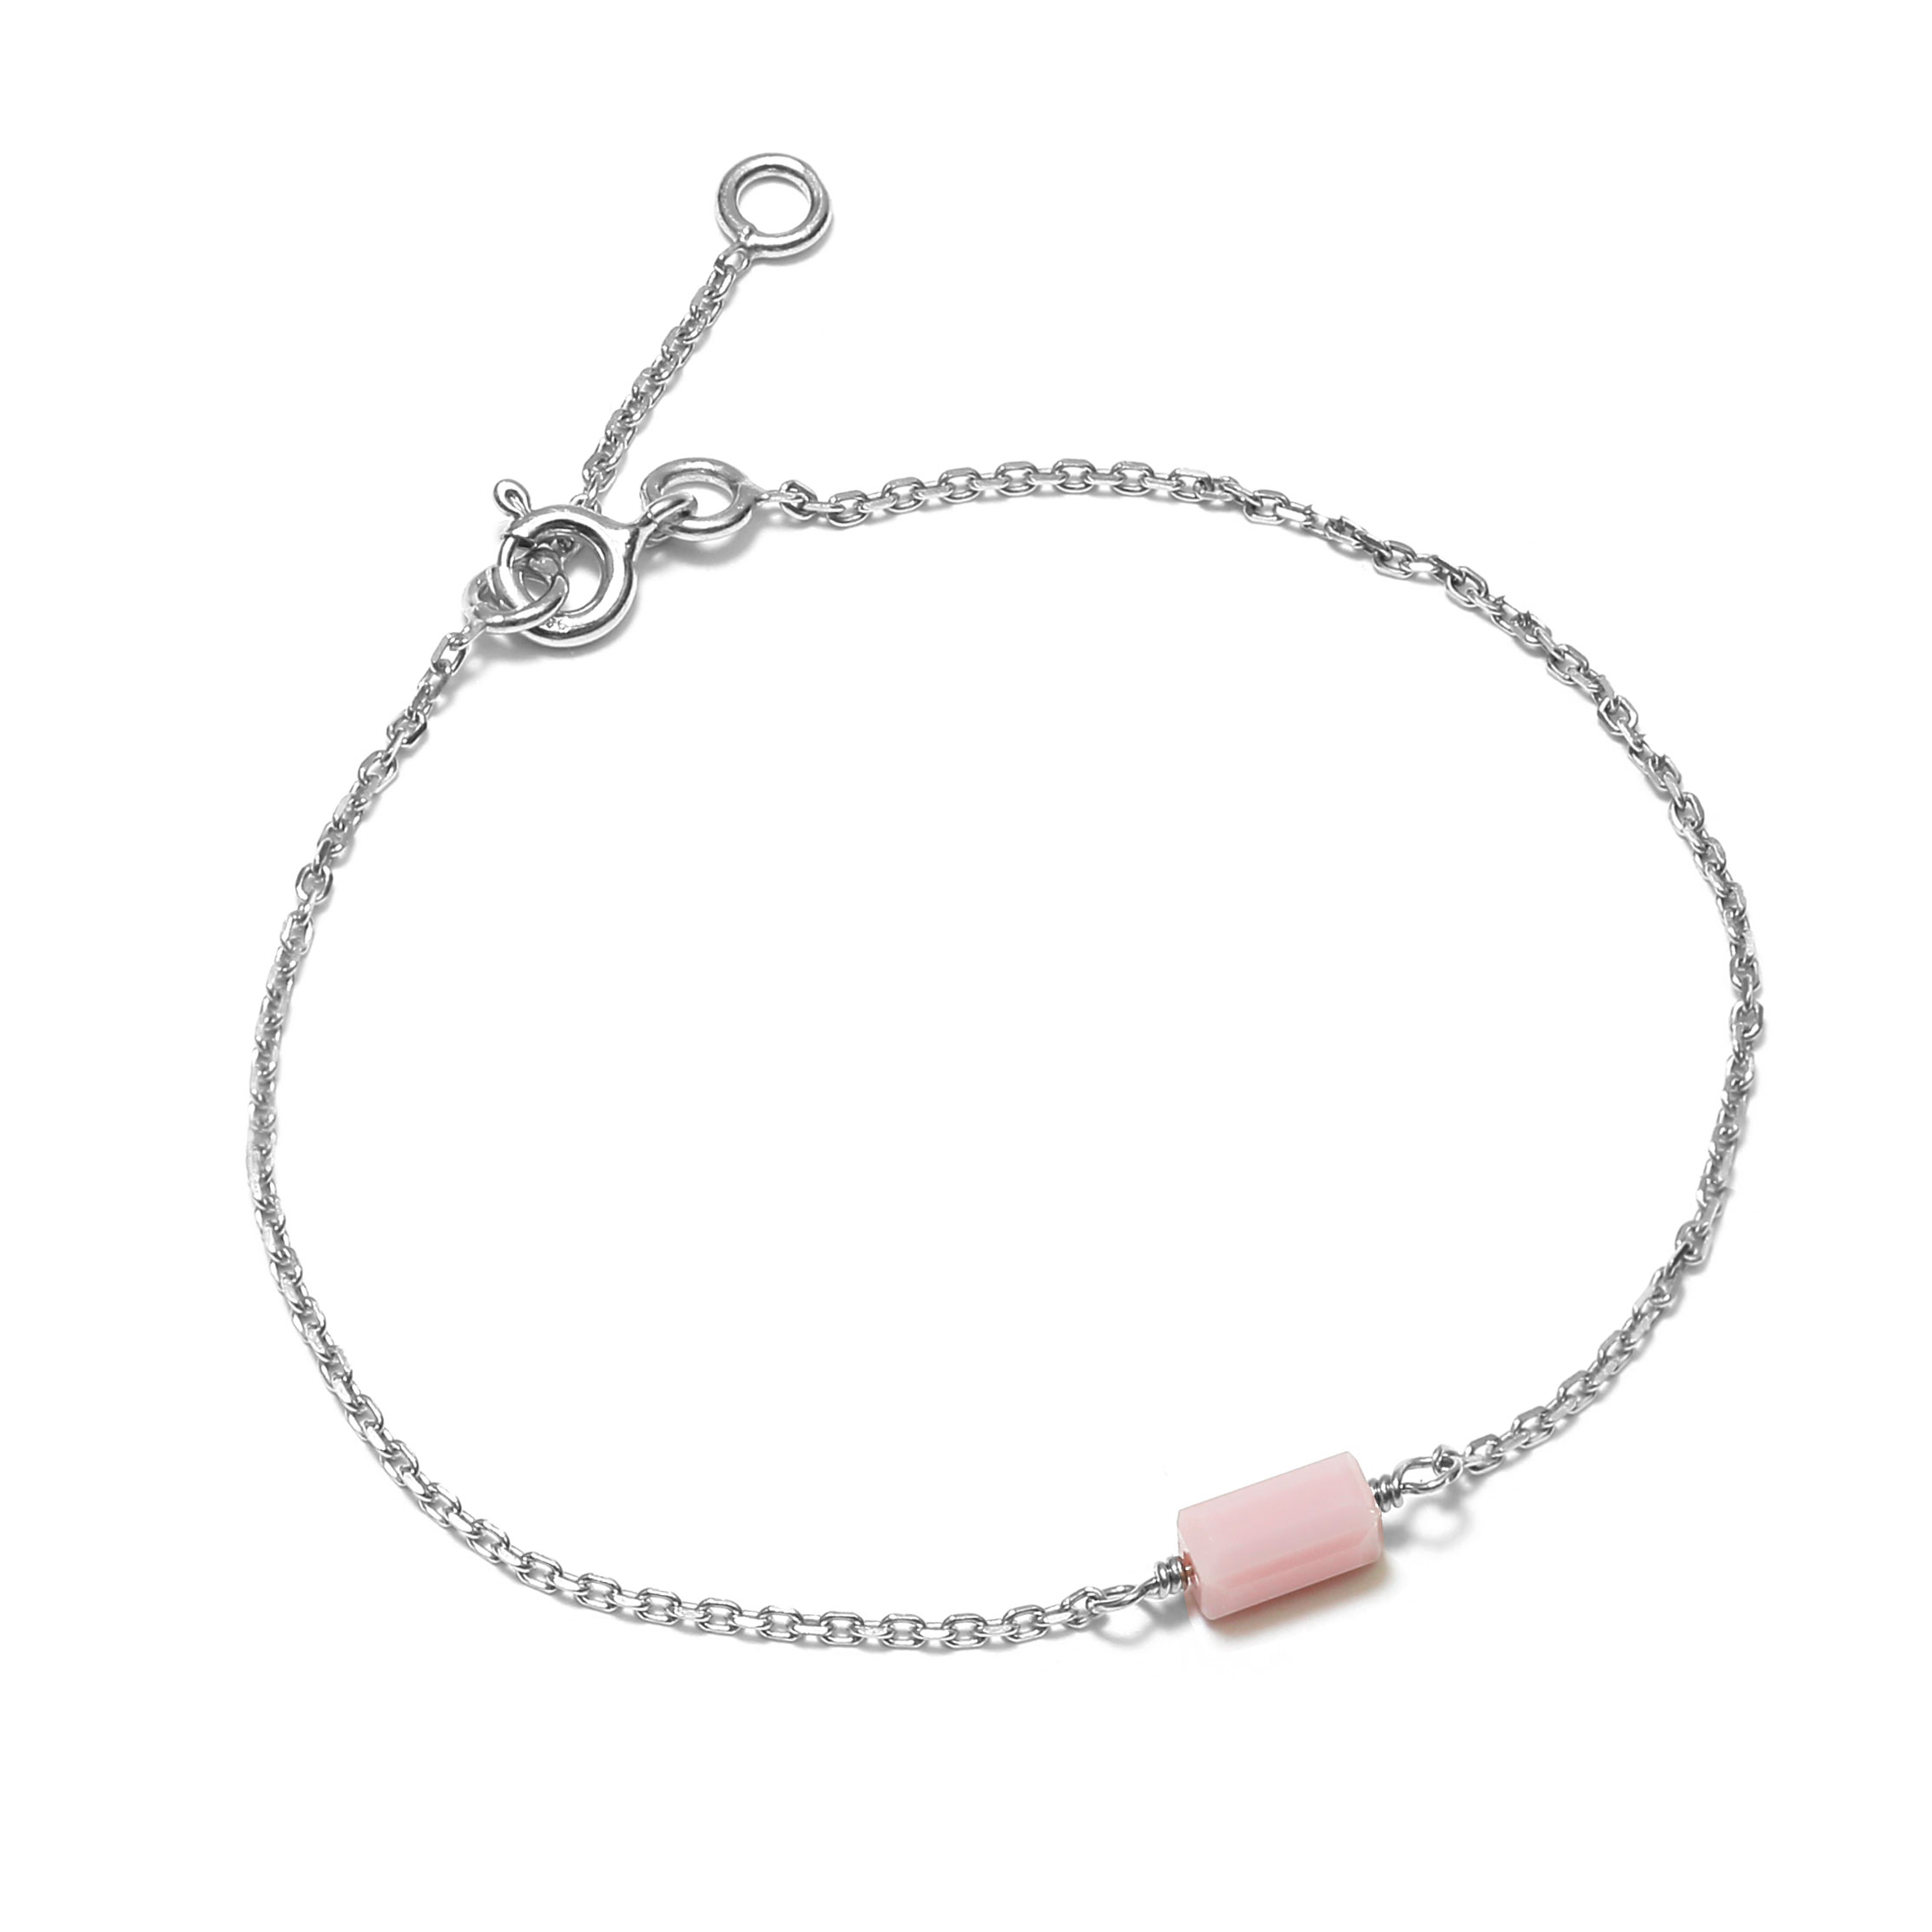 Bracelet en argent décorée dune pastille rectangulaire rose